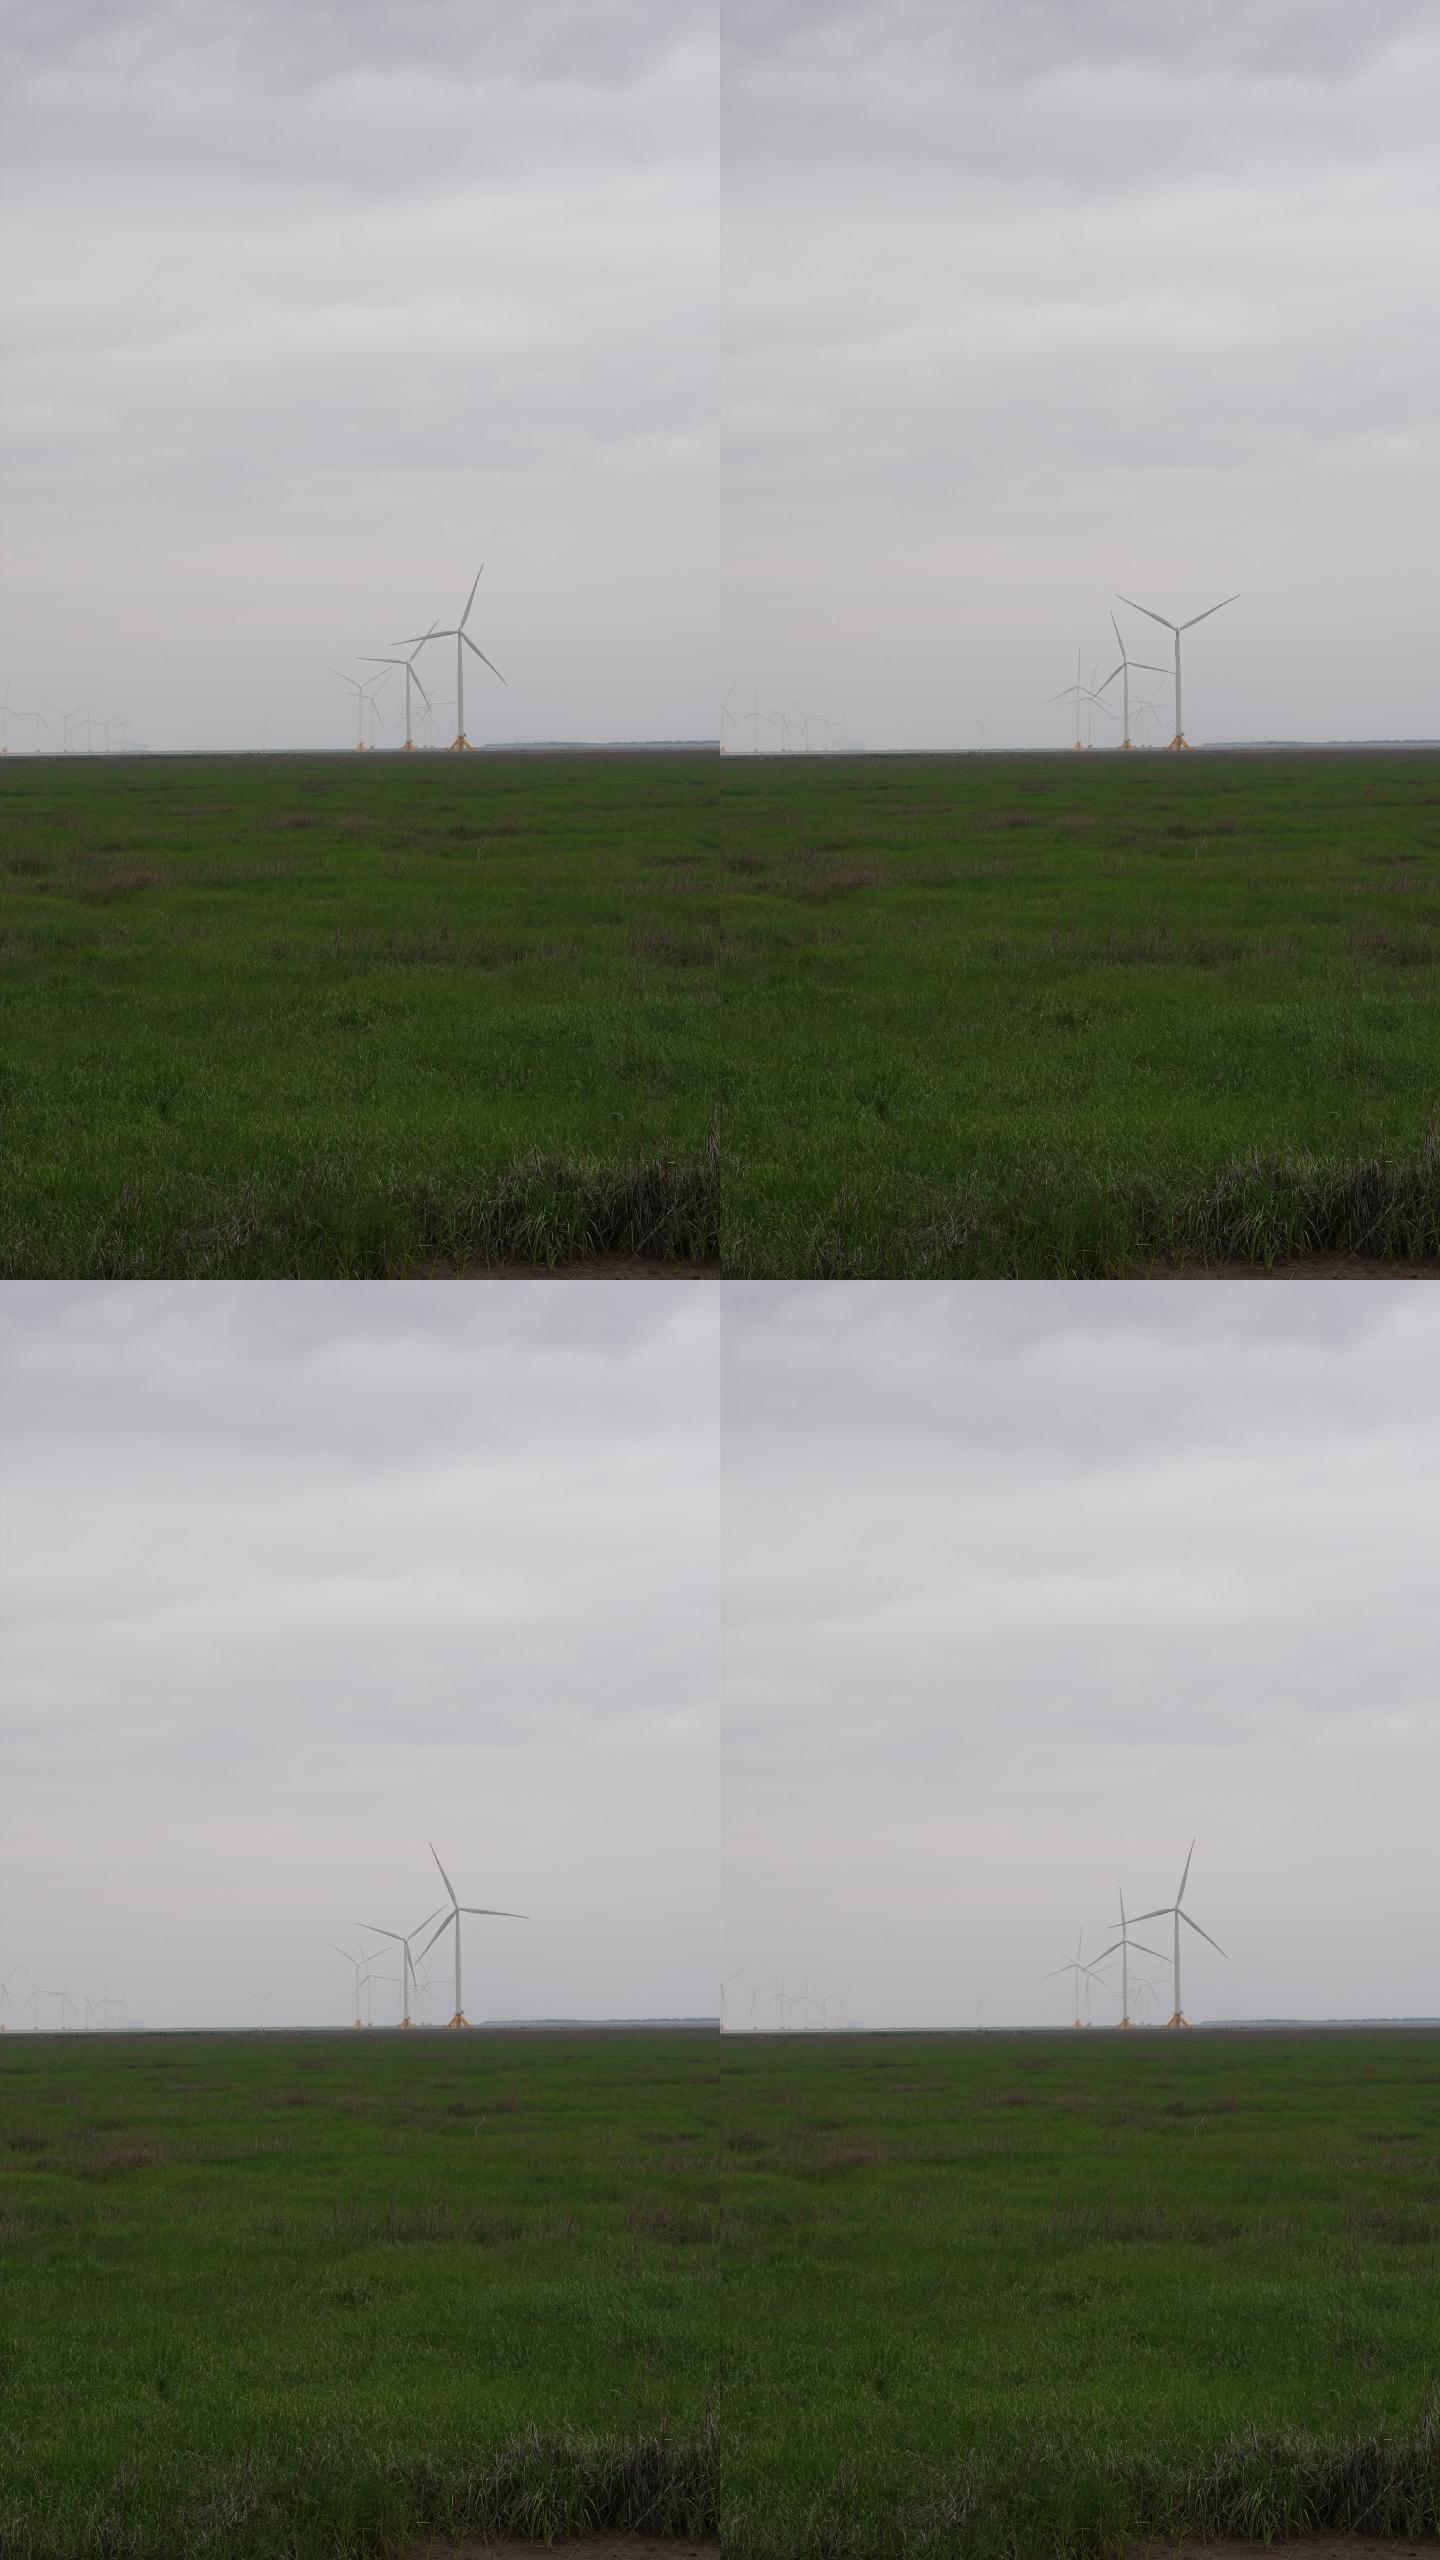 竖拍 夏季田间风力发电机、发电厂